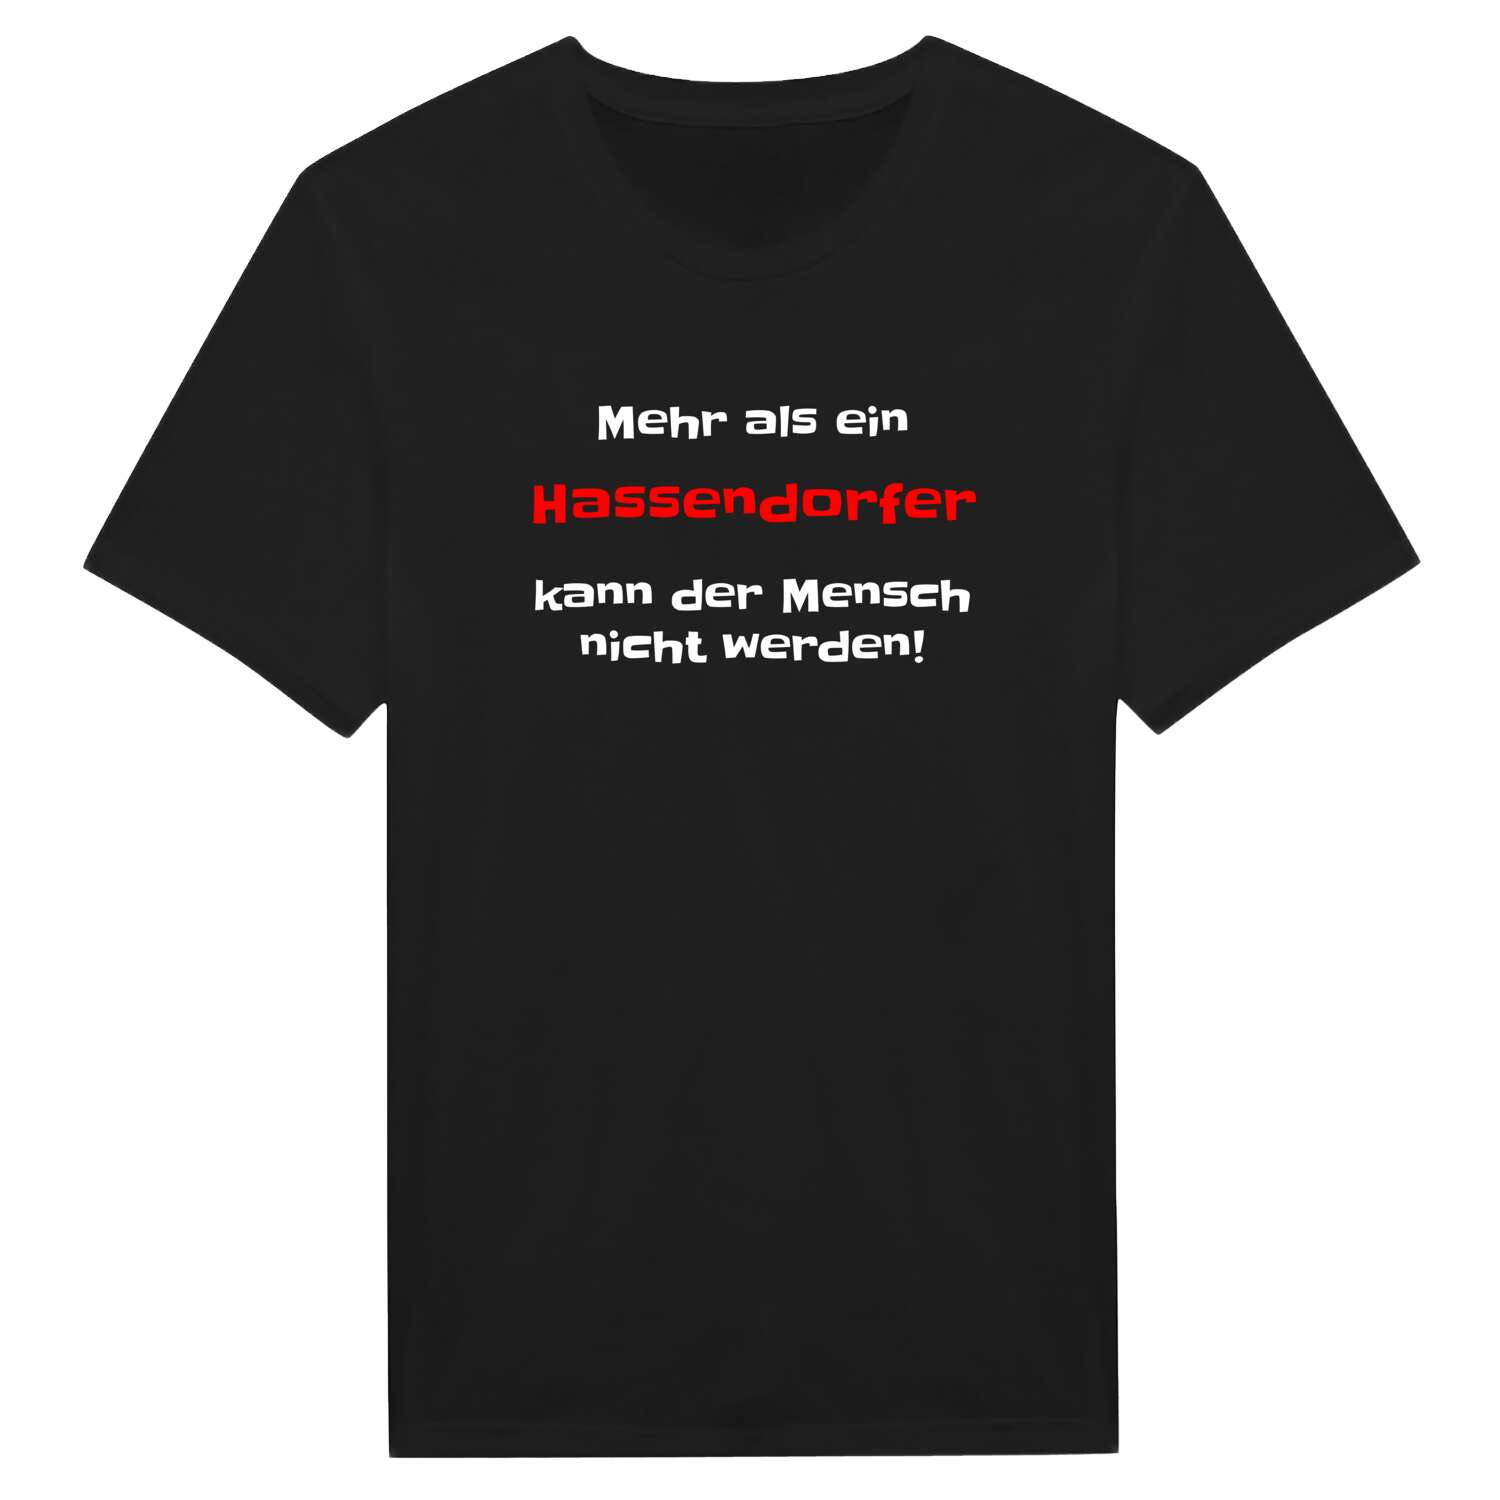 Hassendorf T-Shirt »Mehr als ein«